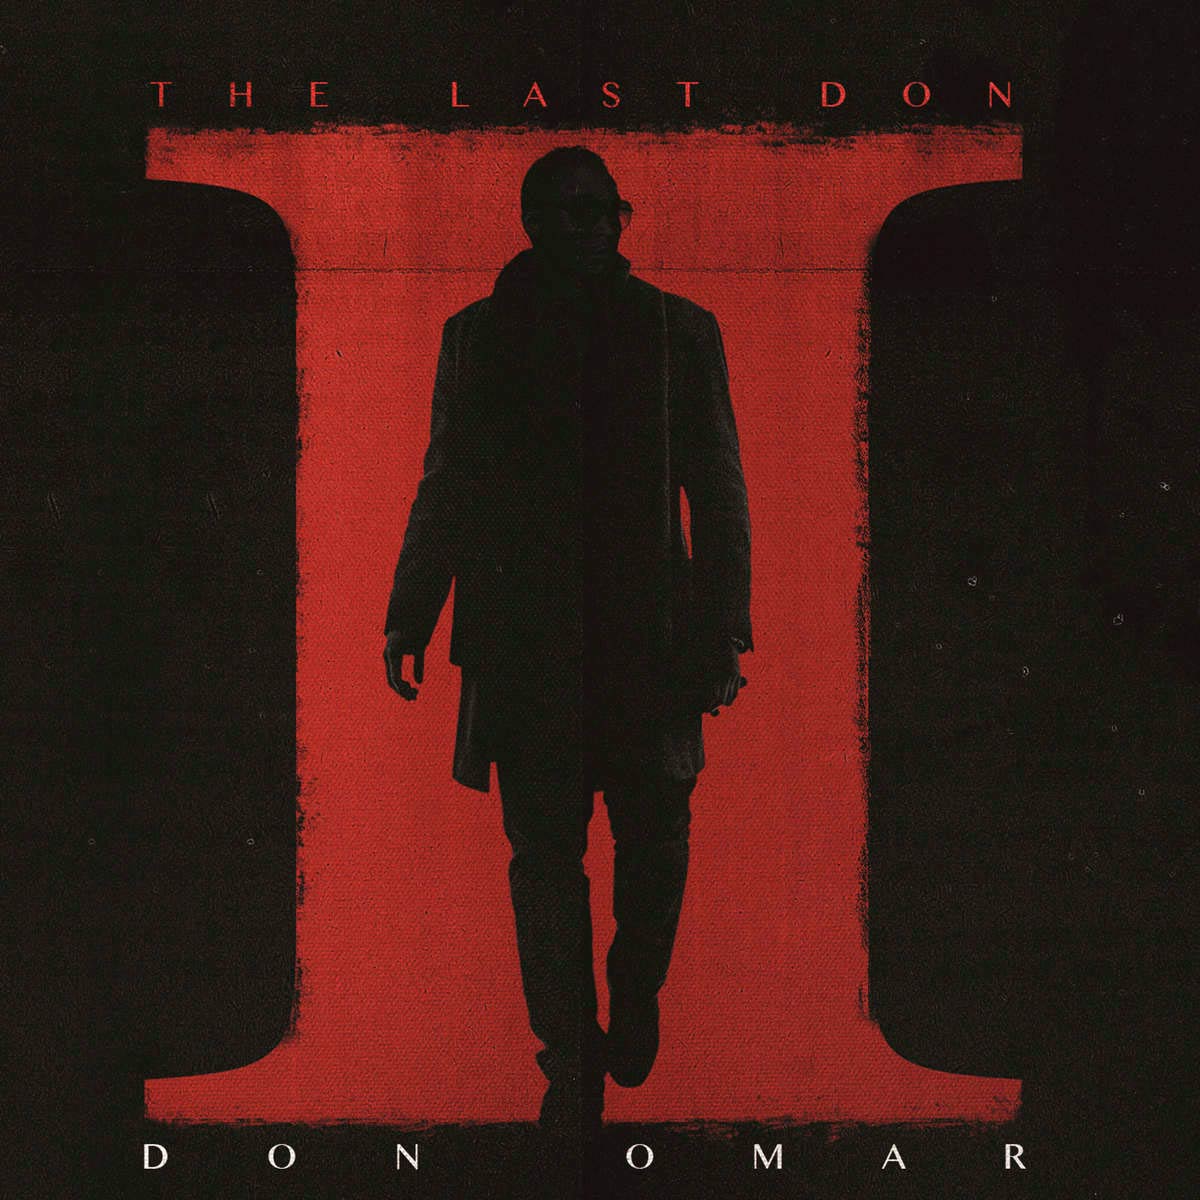 Don Omar: The last Don 2, la portada del disco